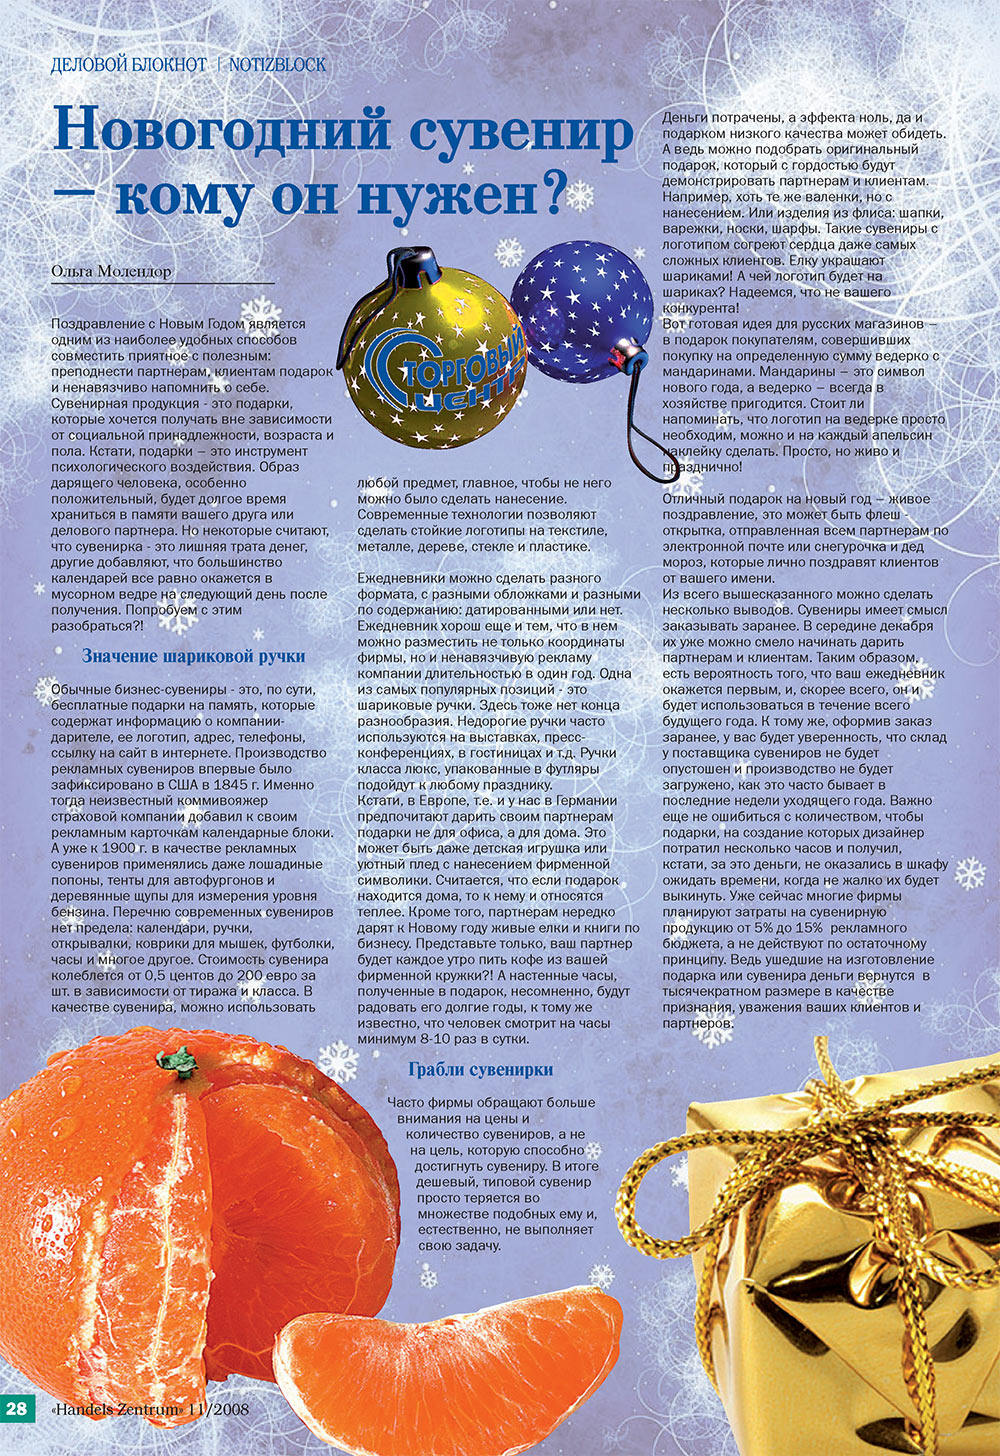 Handels Zentrum (Zeitschrift). 2008 Jahr, Ausgabe 11, Seite 28